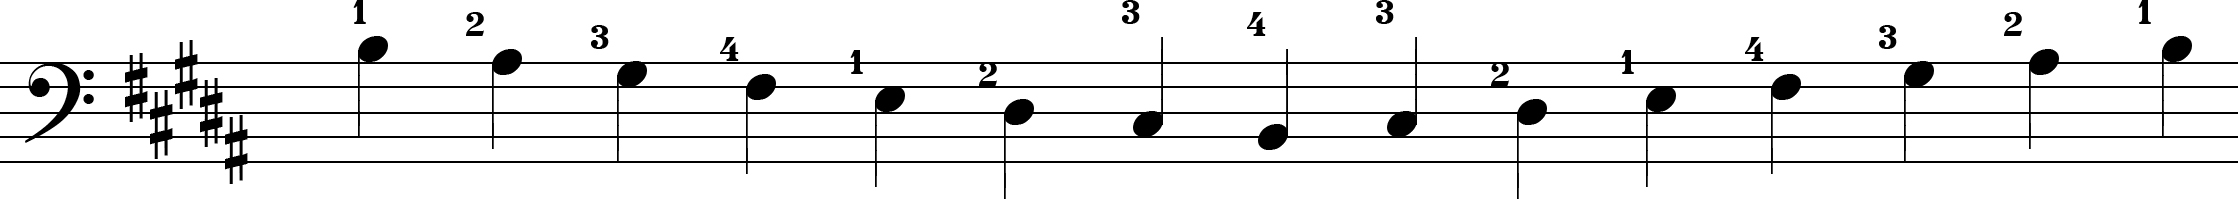 Escalas - Exemplo 2